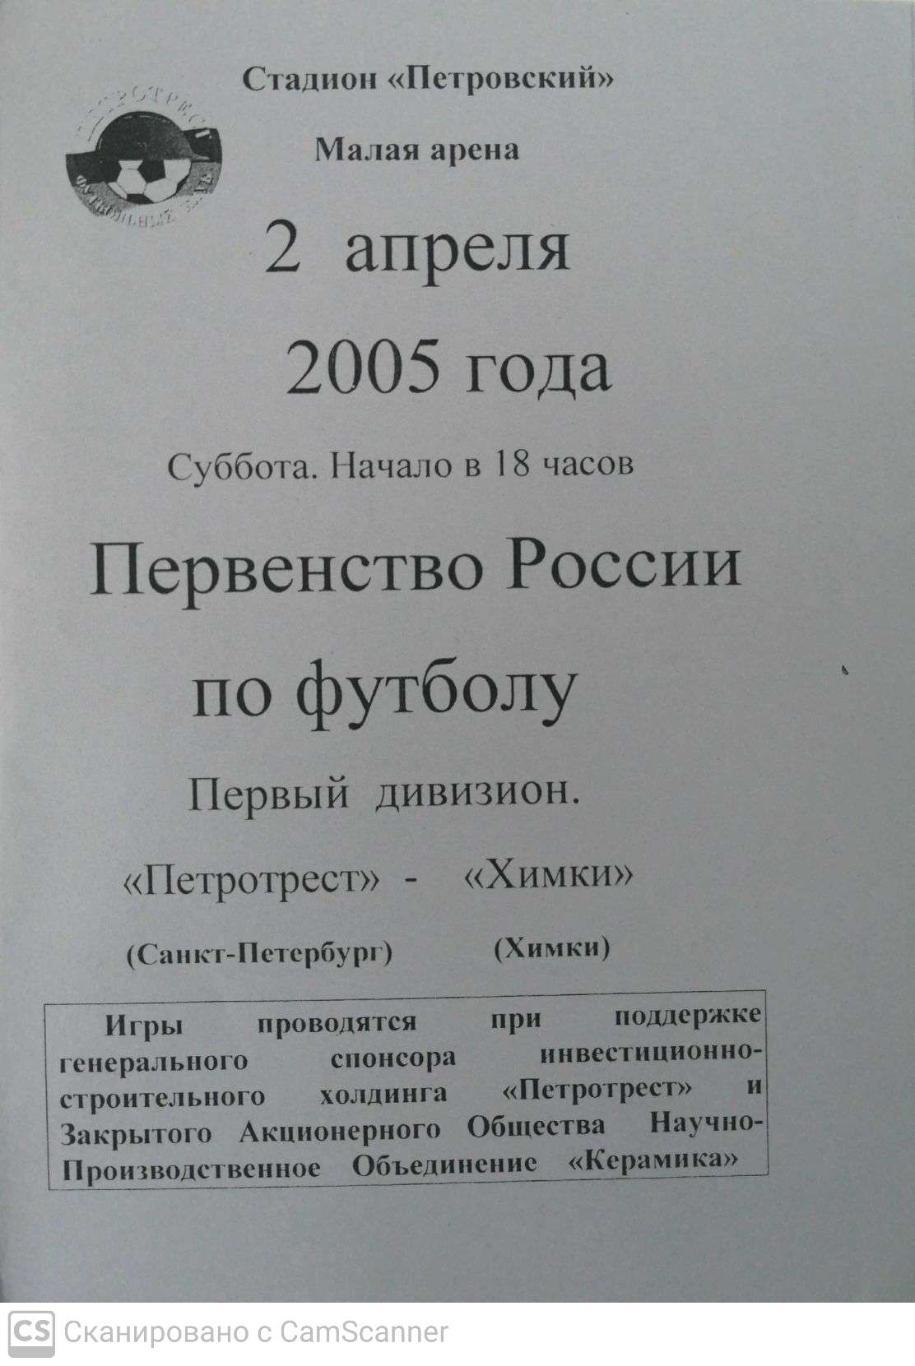 Первый дивизион. Петротрест СПб - Химки 2.04.2005